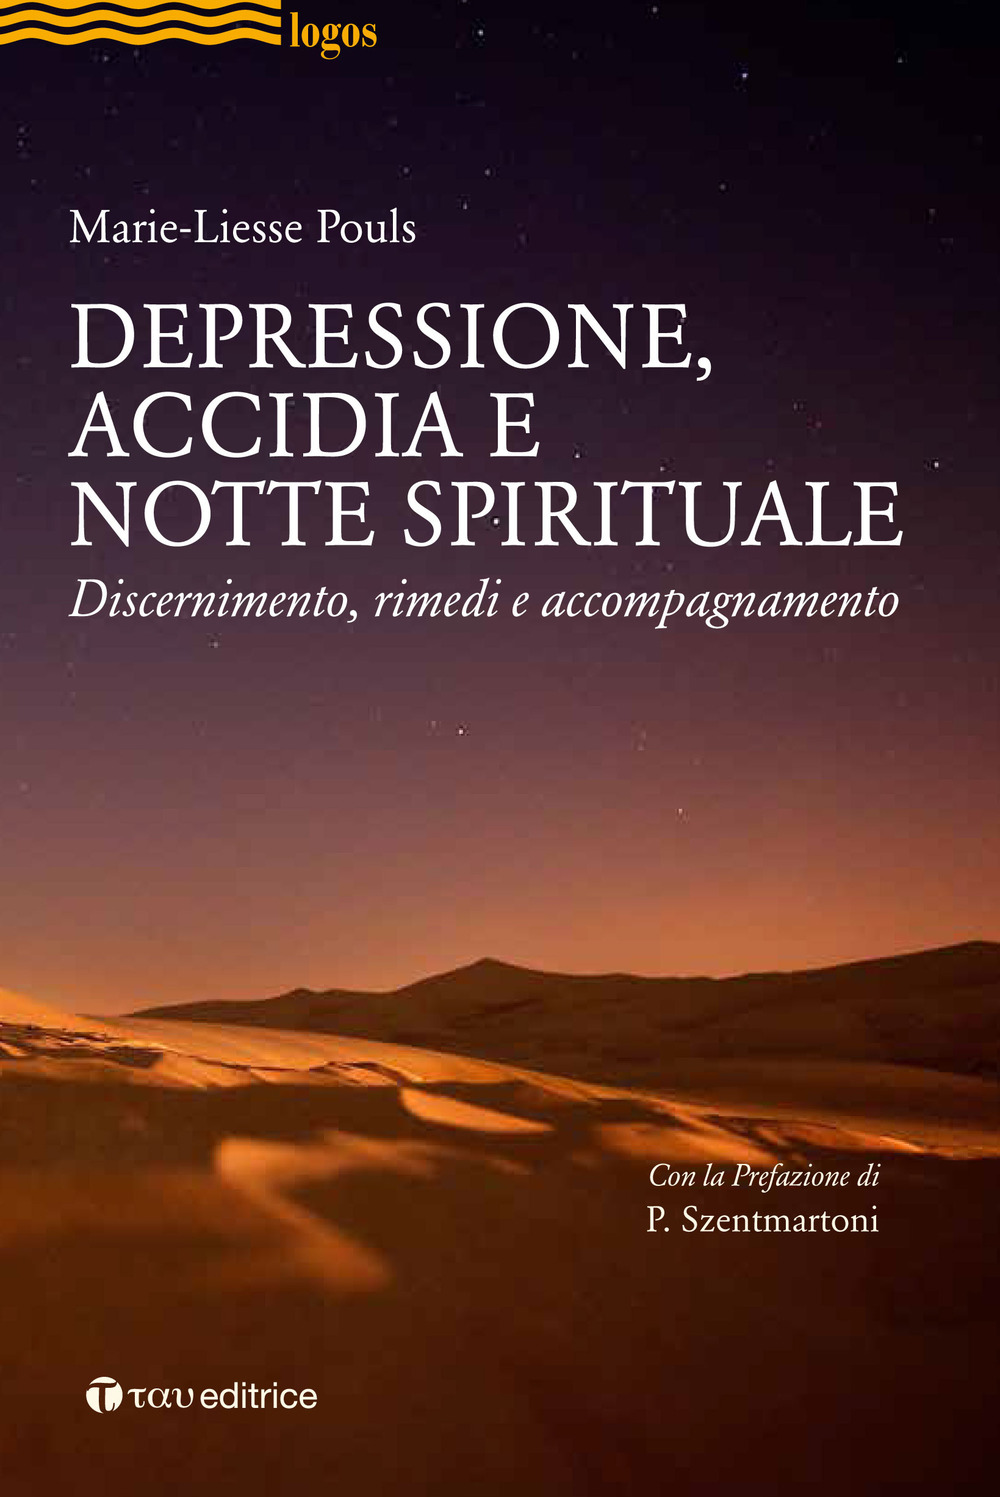 Depressione, accidia e notte spirituale. Discernimento, rimedi, accompagnamento